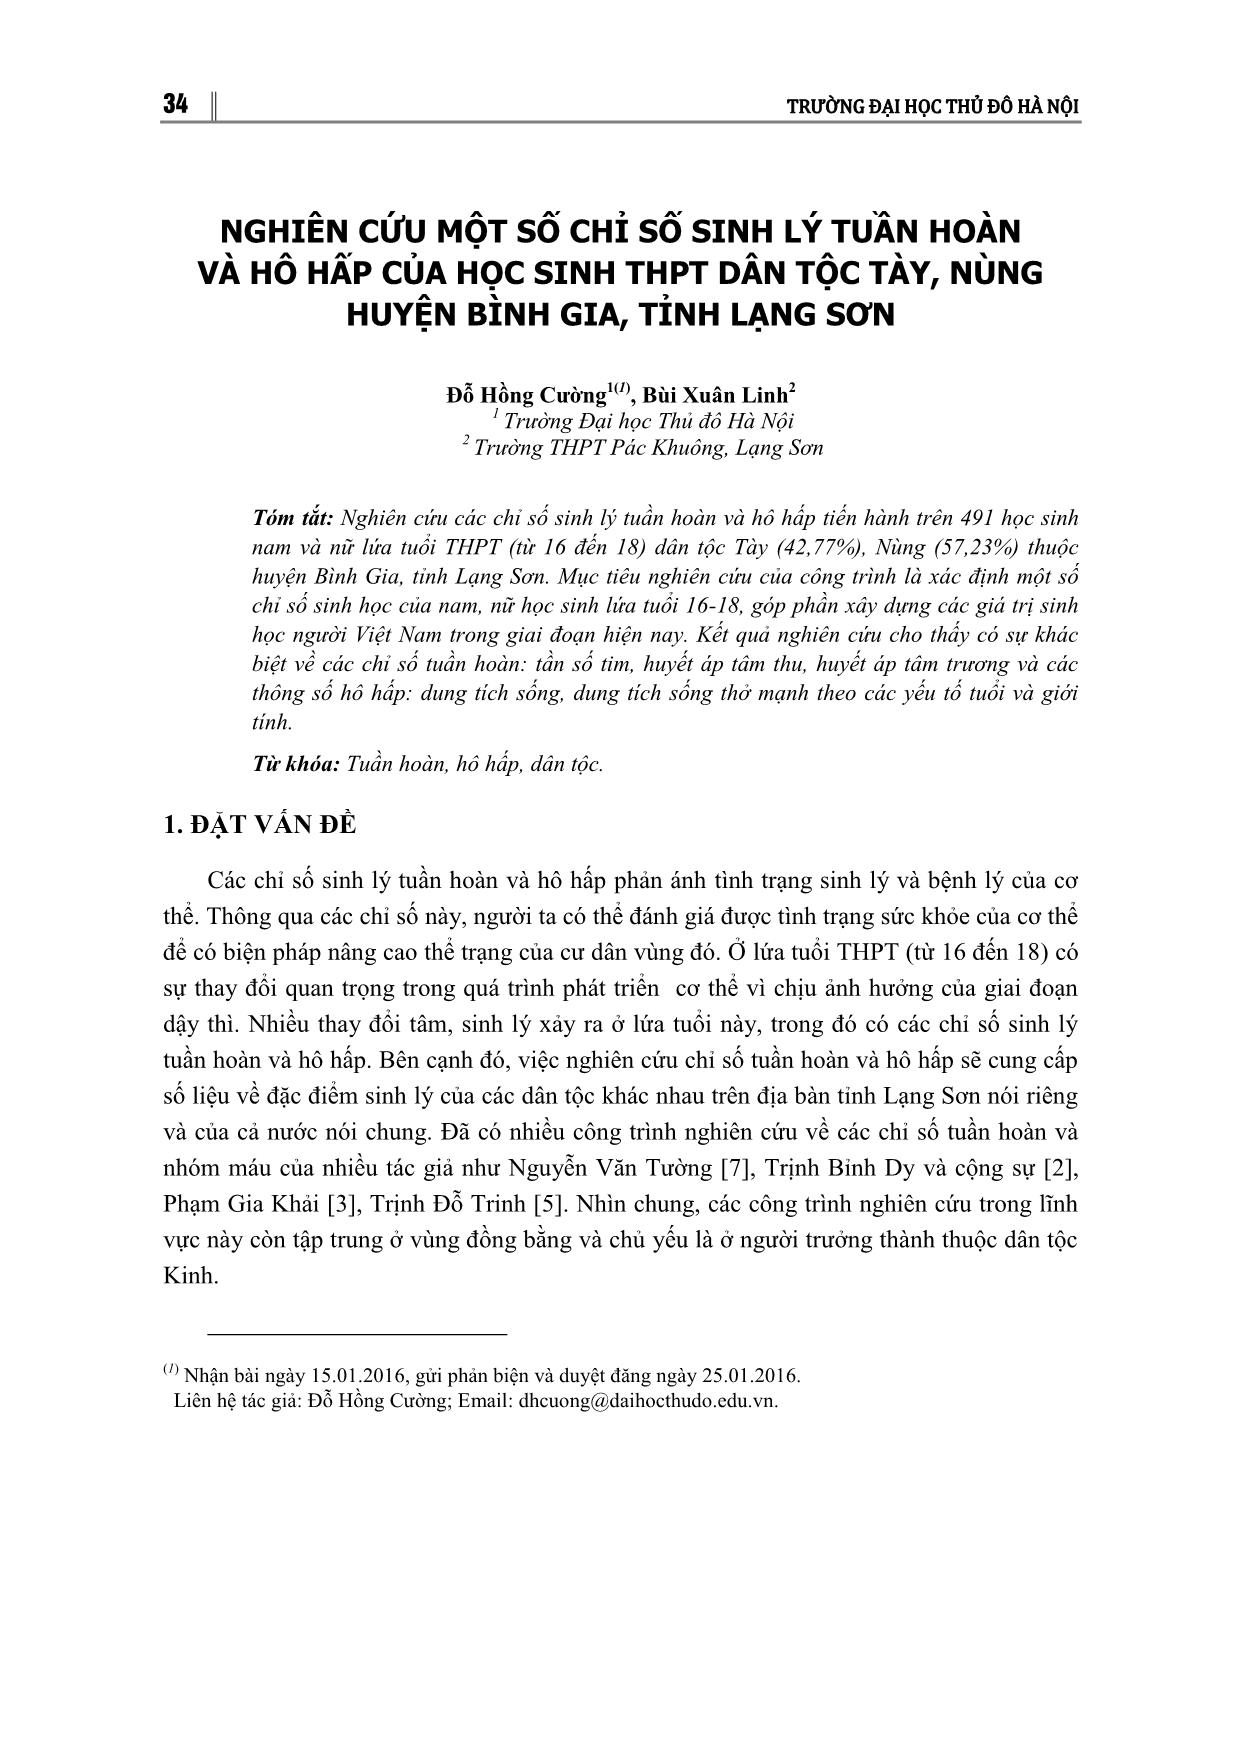 Nghiên cứu một số chỉ số sinh lý tuần hoàn và hô hấp của học sinh THPT dân tộc Tày, Nùng huyện Bình Gia, tỉnh Lạng Sơn trang 1